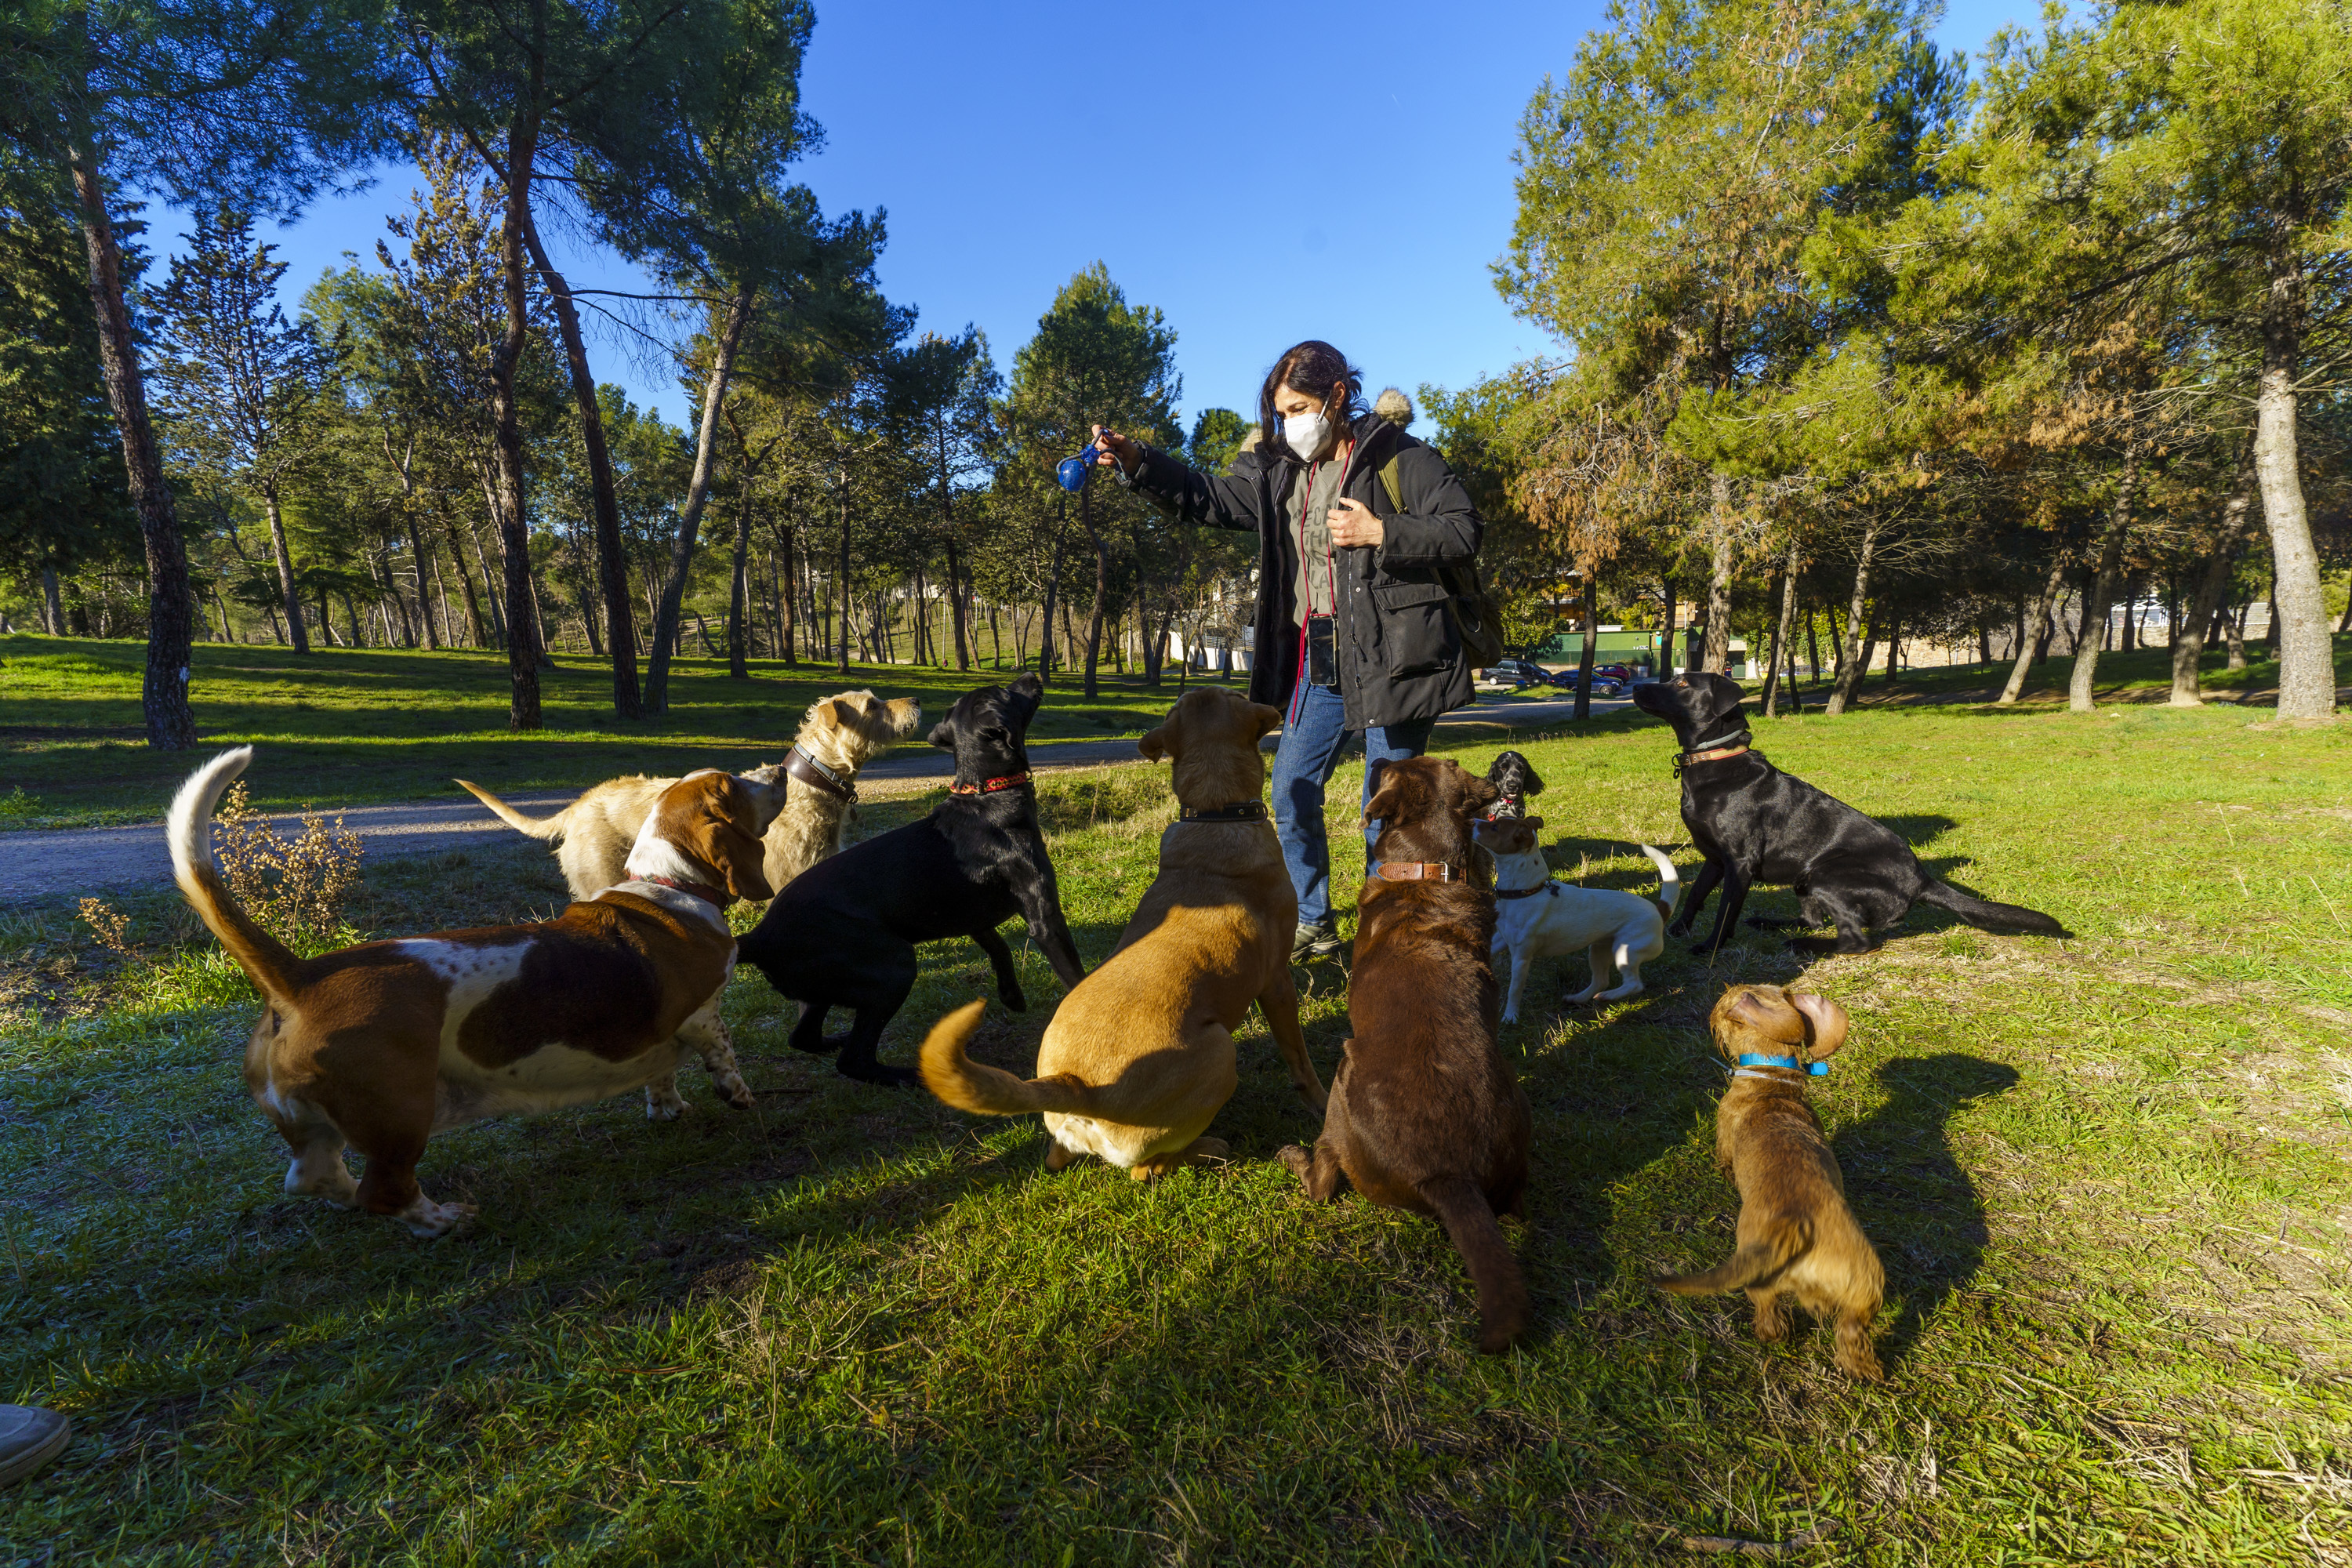 puente muelle Pantera Paseadores de perros, el negocio en auge en los barrios 'ricos' de Madrid:  "¿Humanizar a los animales? No les paso una" | Madrid